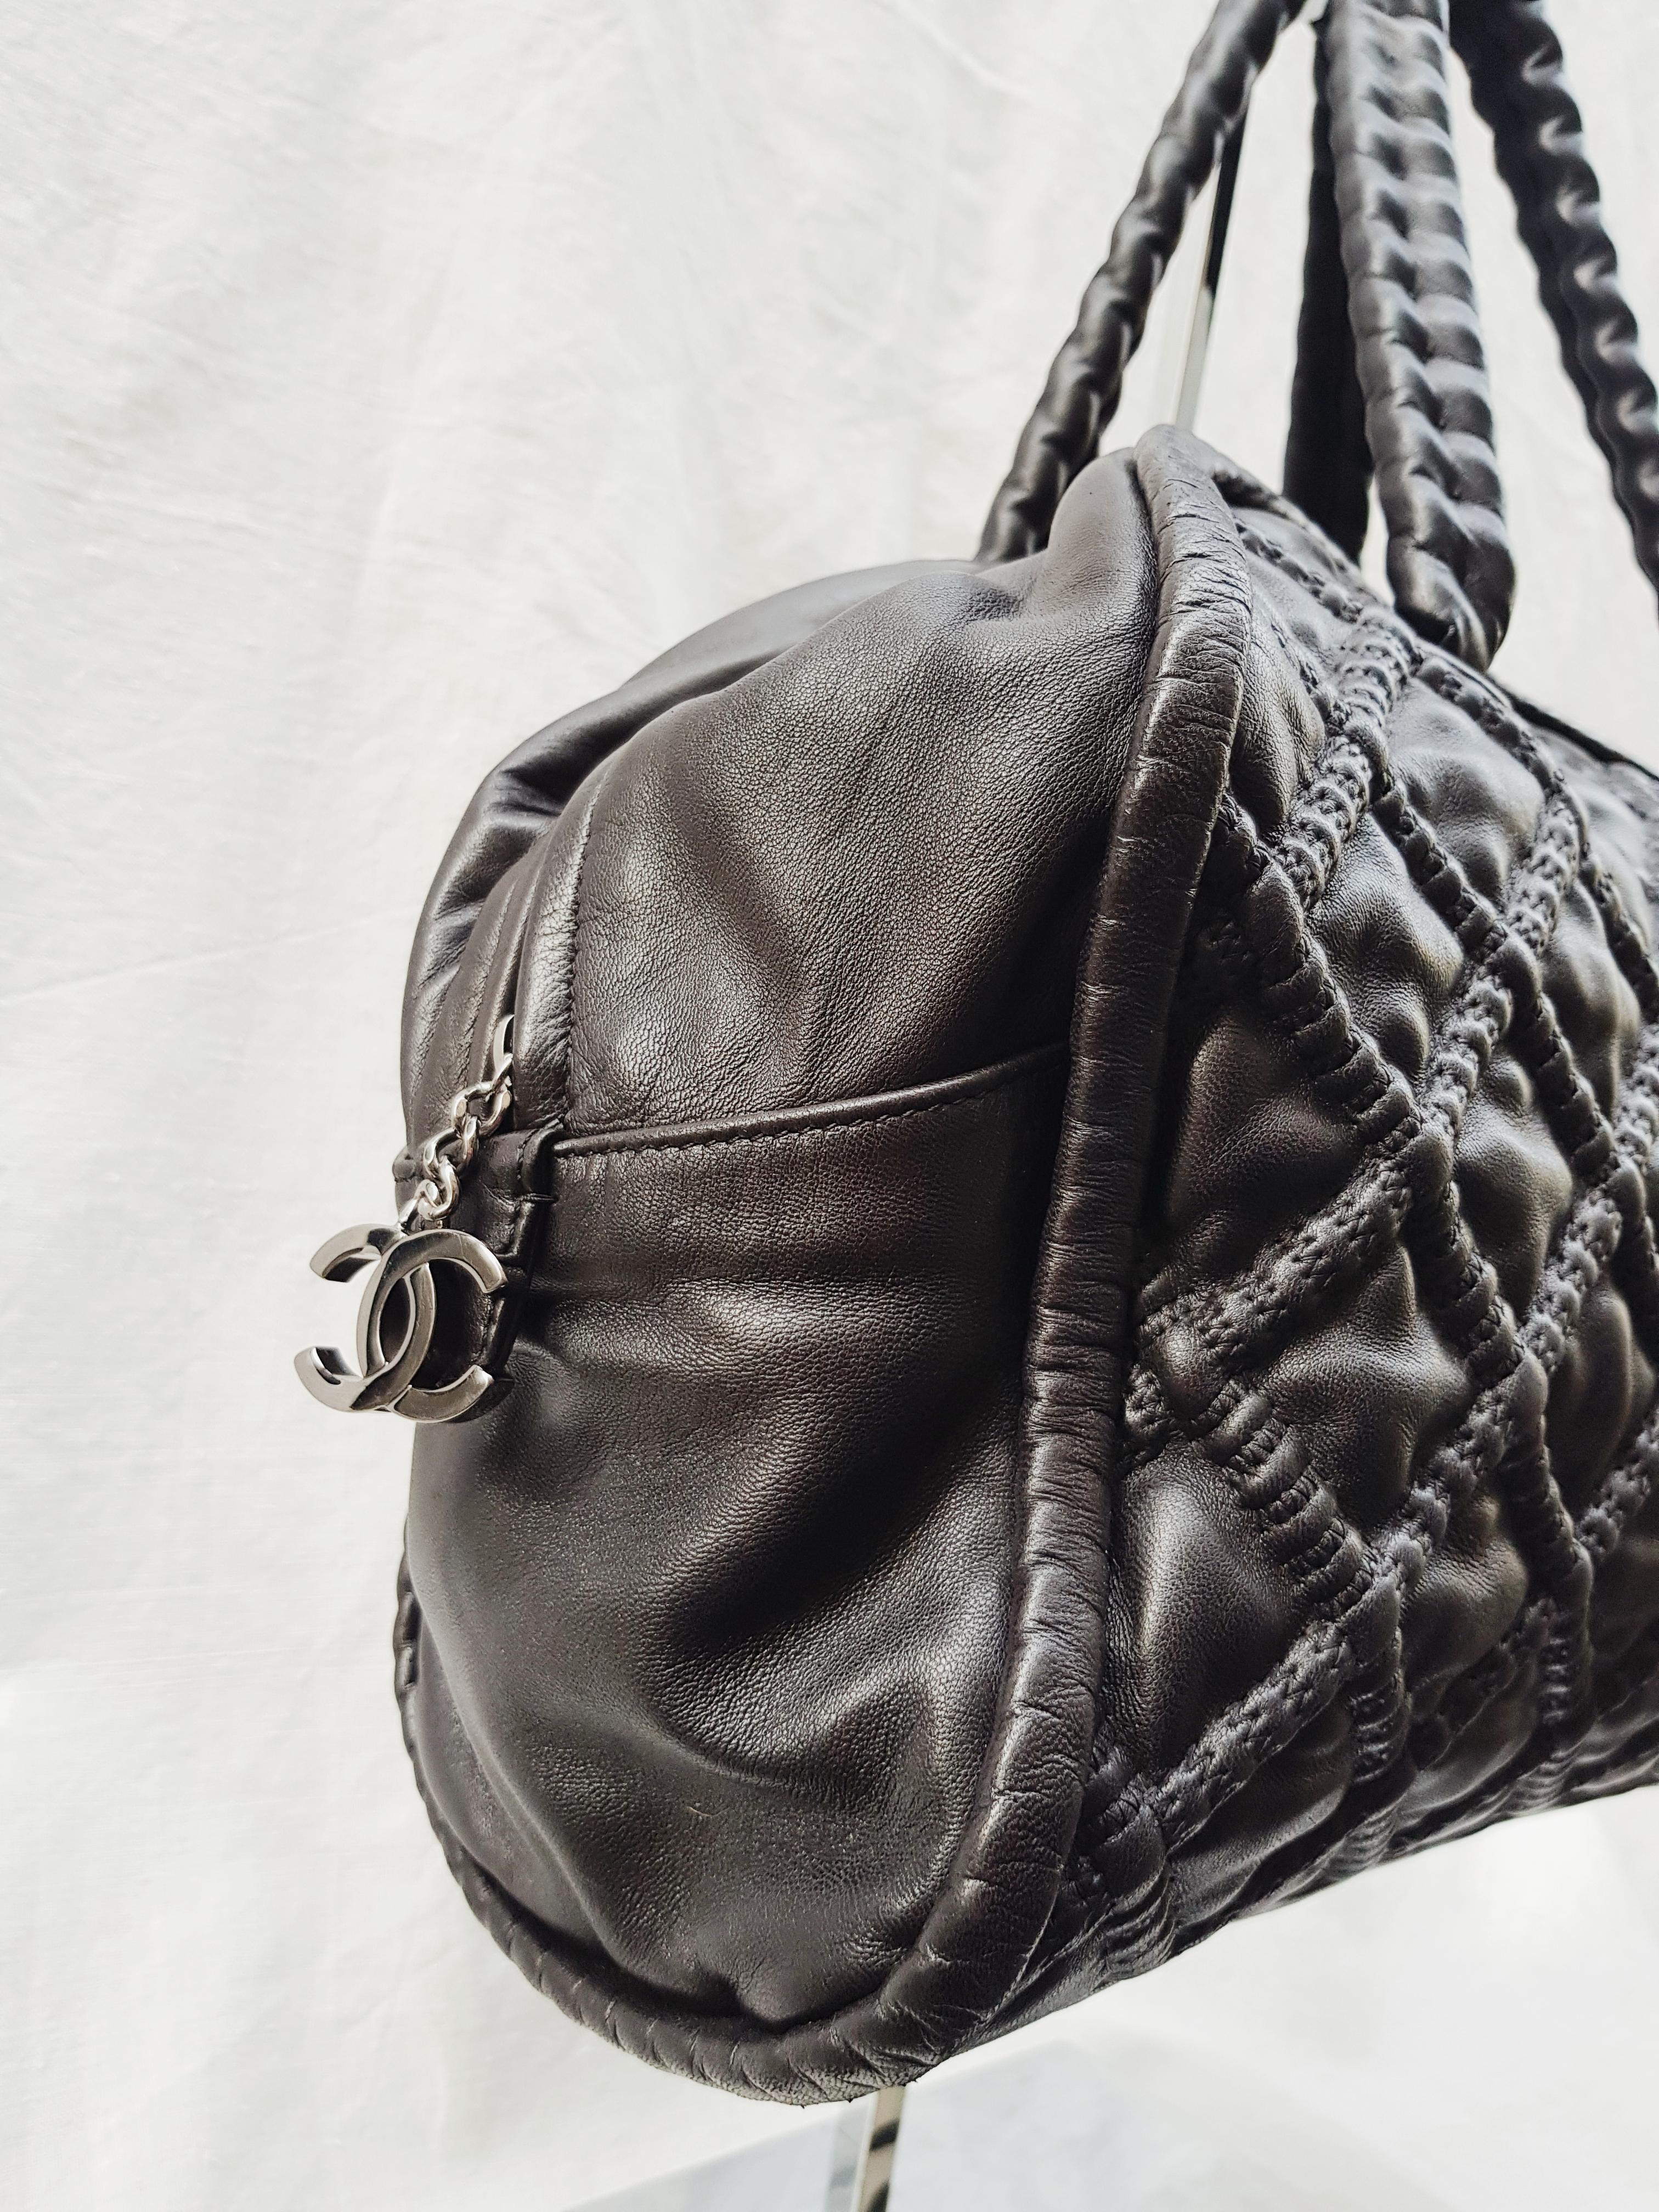 Ce fantastique sac bowler Chanel est réalisé en cuir d'agneau matelassé noir. Il est doté de deux anses en cuir à chaîne cachées, d'une tirette de fermeture éclair à breloque CC et d'accessoires en métal argenté. Sa fermeture à glissière ouvre sur